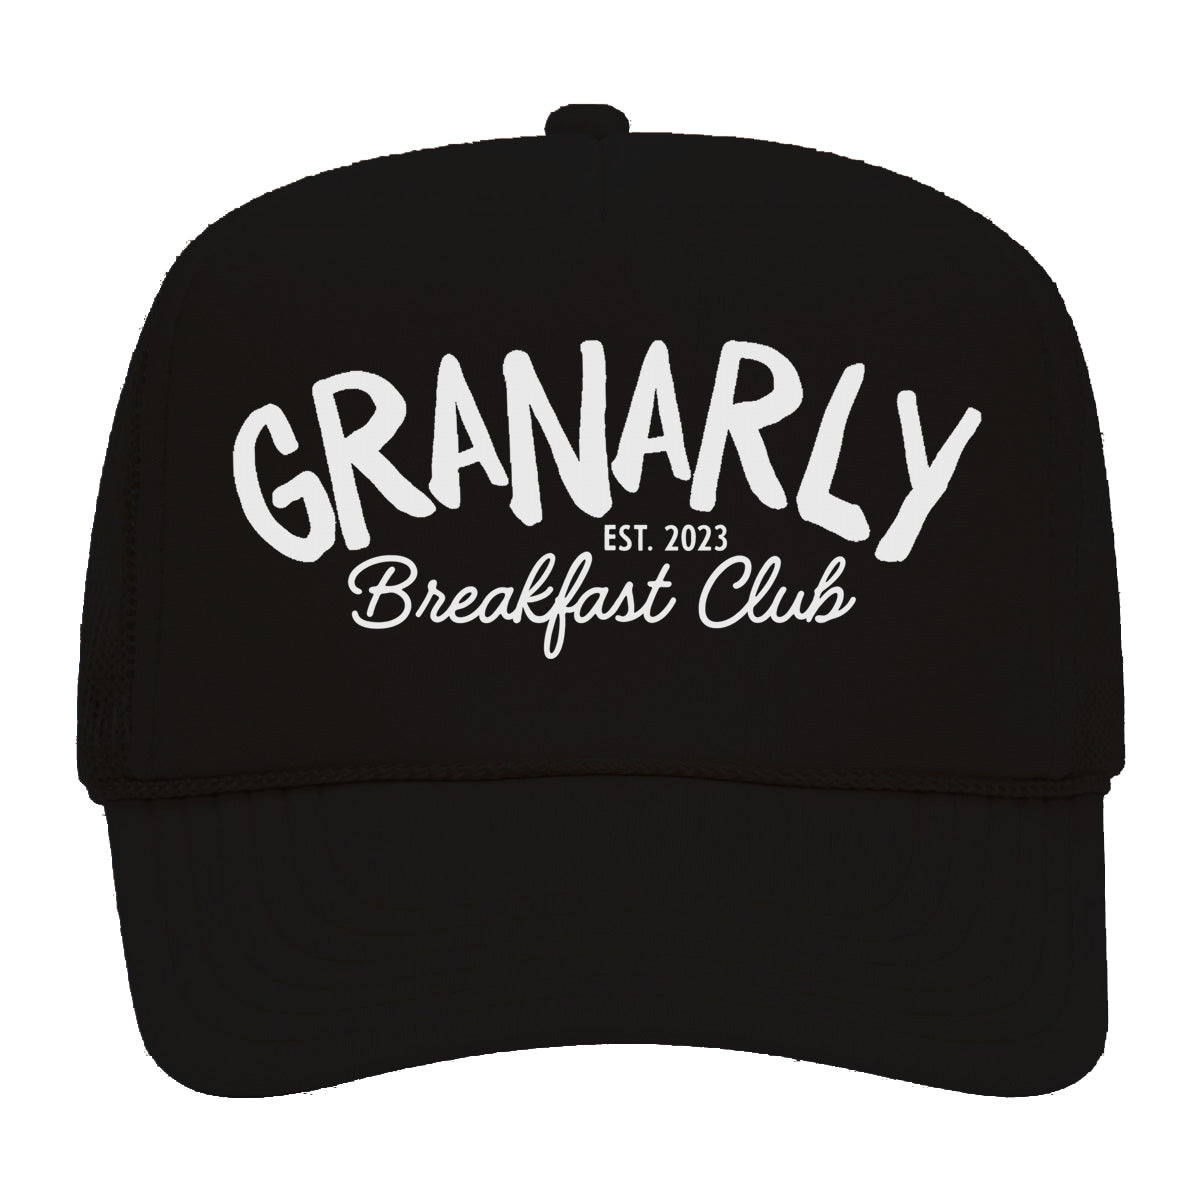 Granarly Breakfast Club Foam Snapback